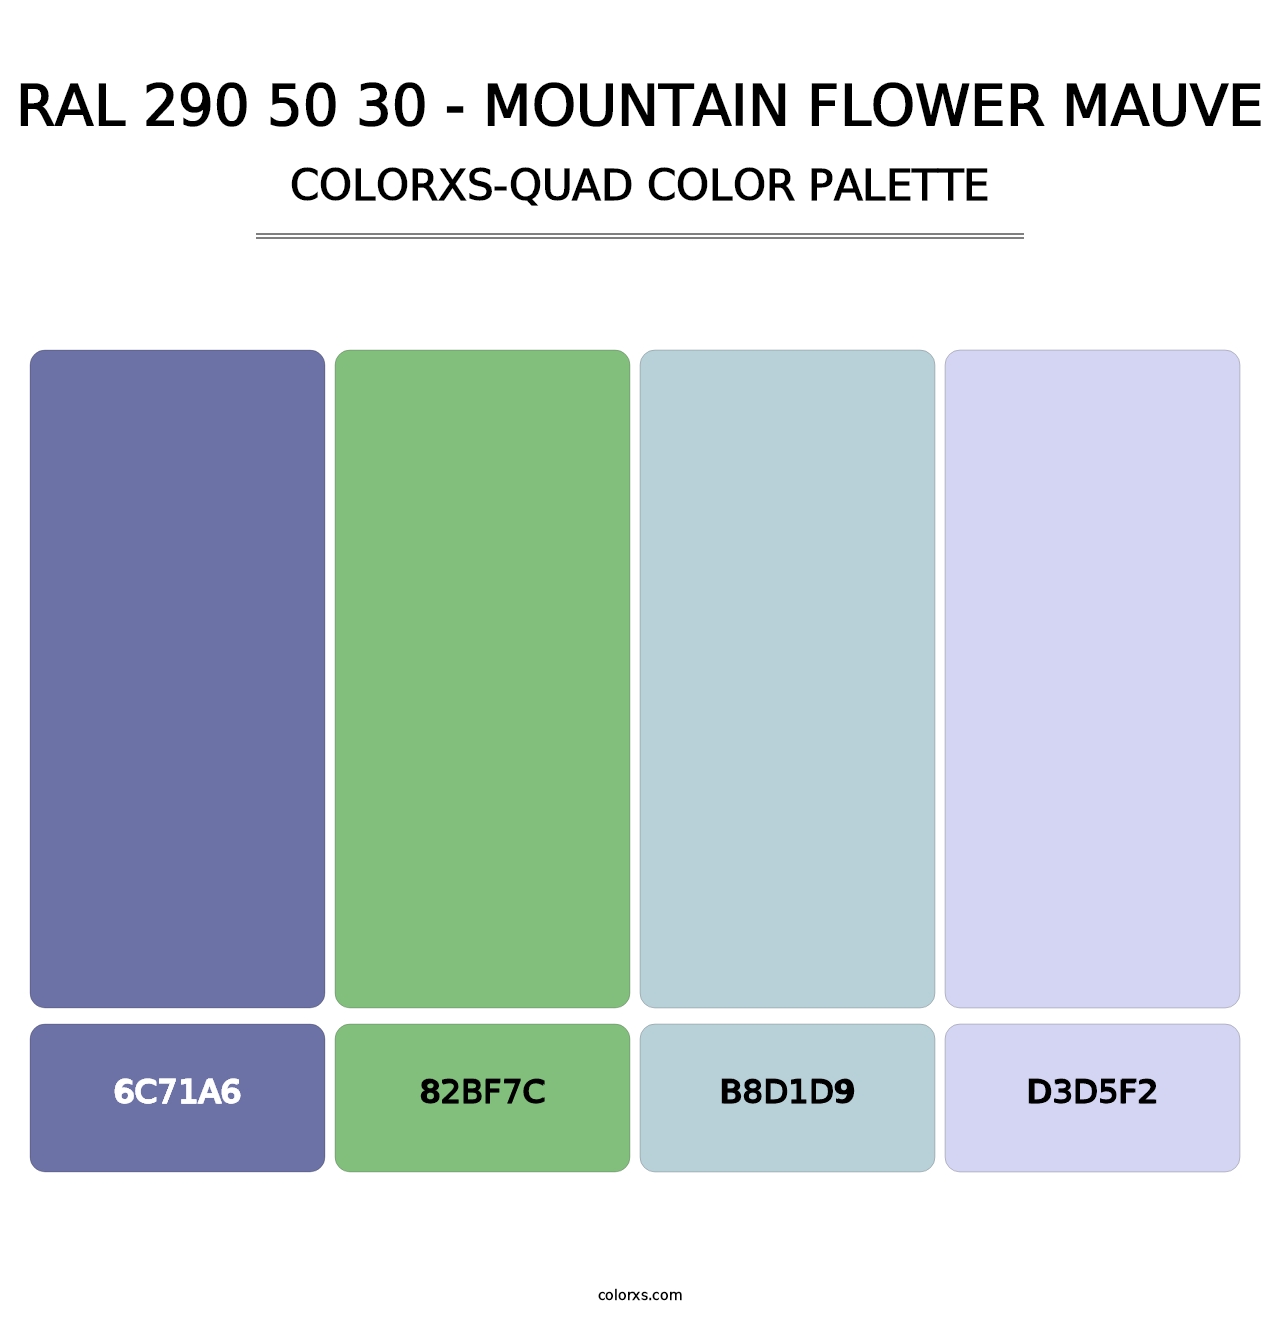 RAL 290 50 30 - Mountain Flower Mauve - Colorxs Quad Palette